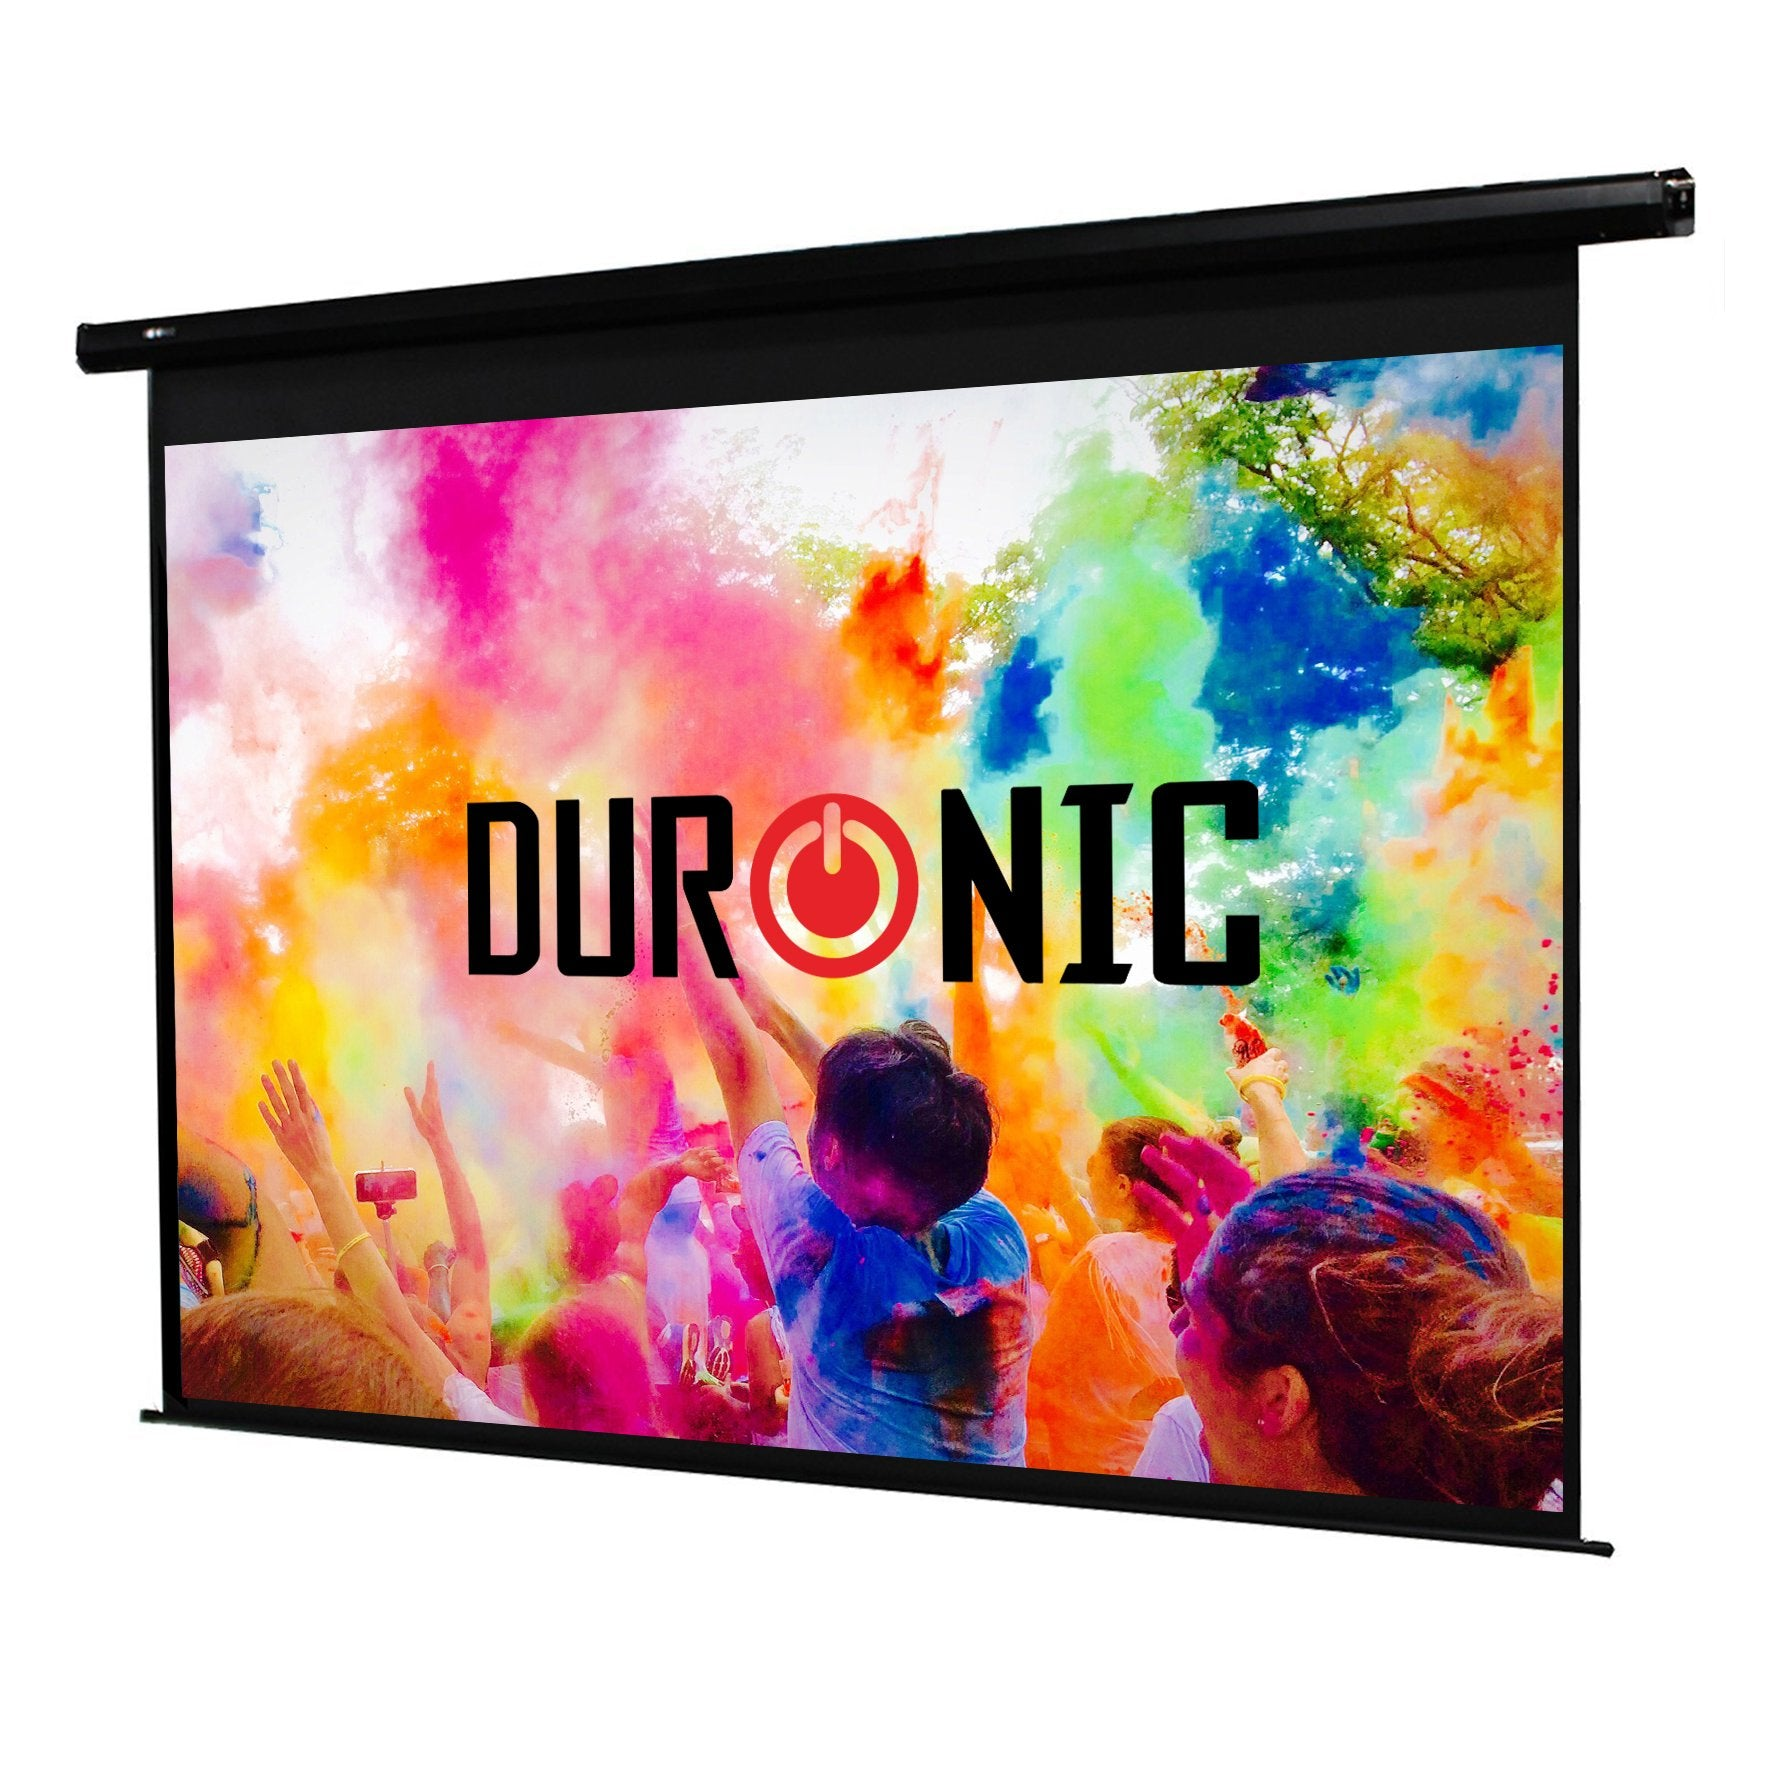 Duronic Eps60 43 pantalla proyección motorizada 122x91 60 para proyector 122 cm 91 formato full hd 3d eps6043 nuls30bob2 pulgadas enrollable alta